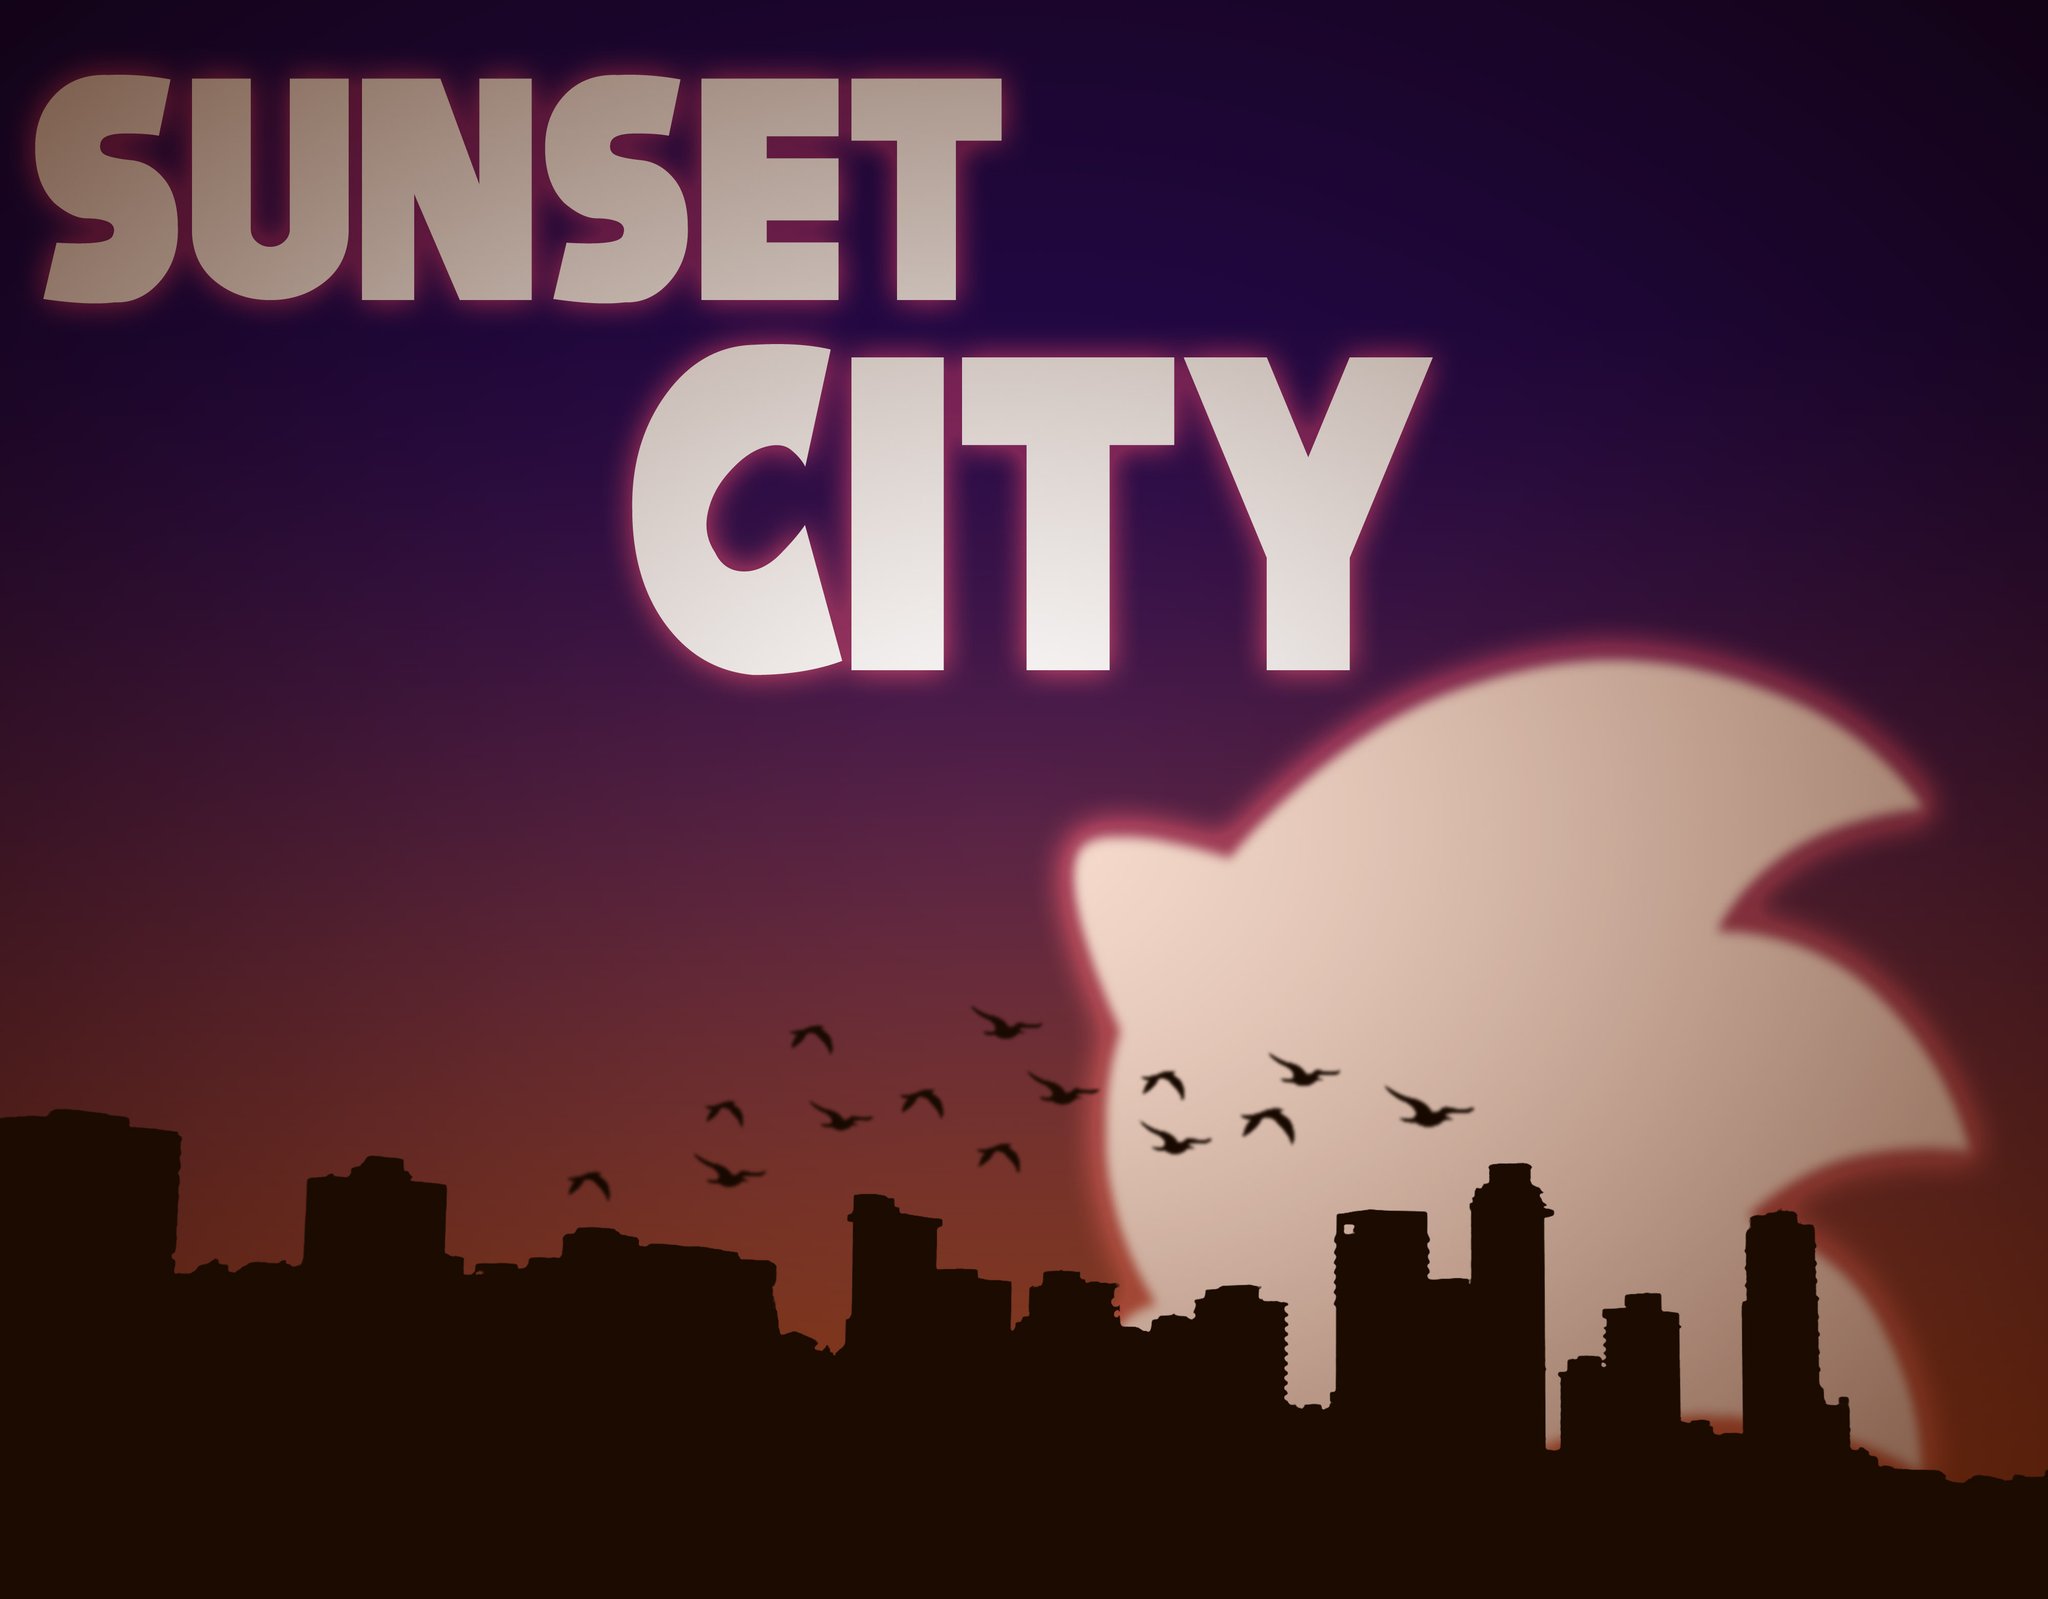 A Vice City Sunset  Sunset city, Sunset, City